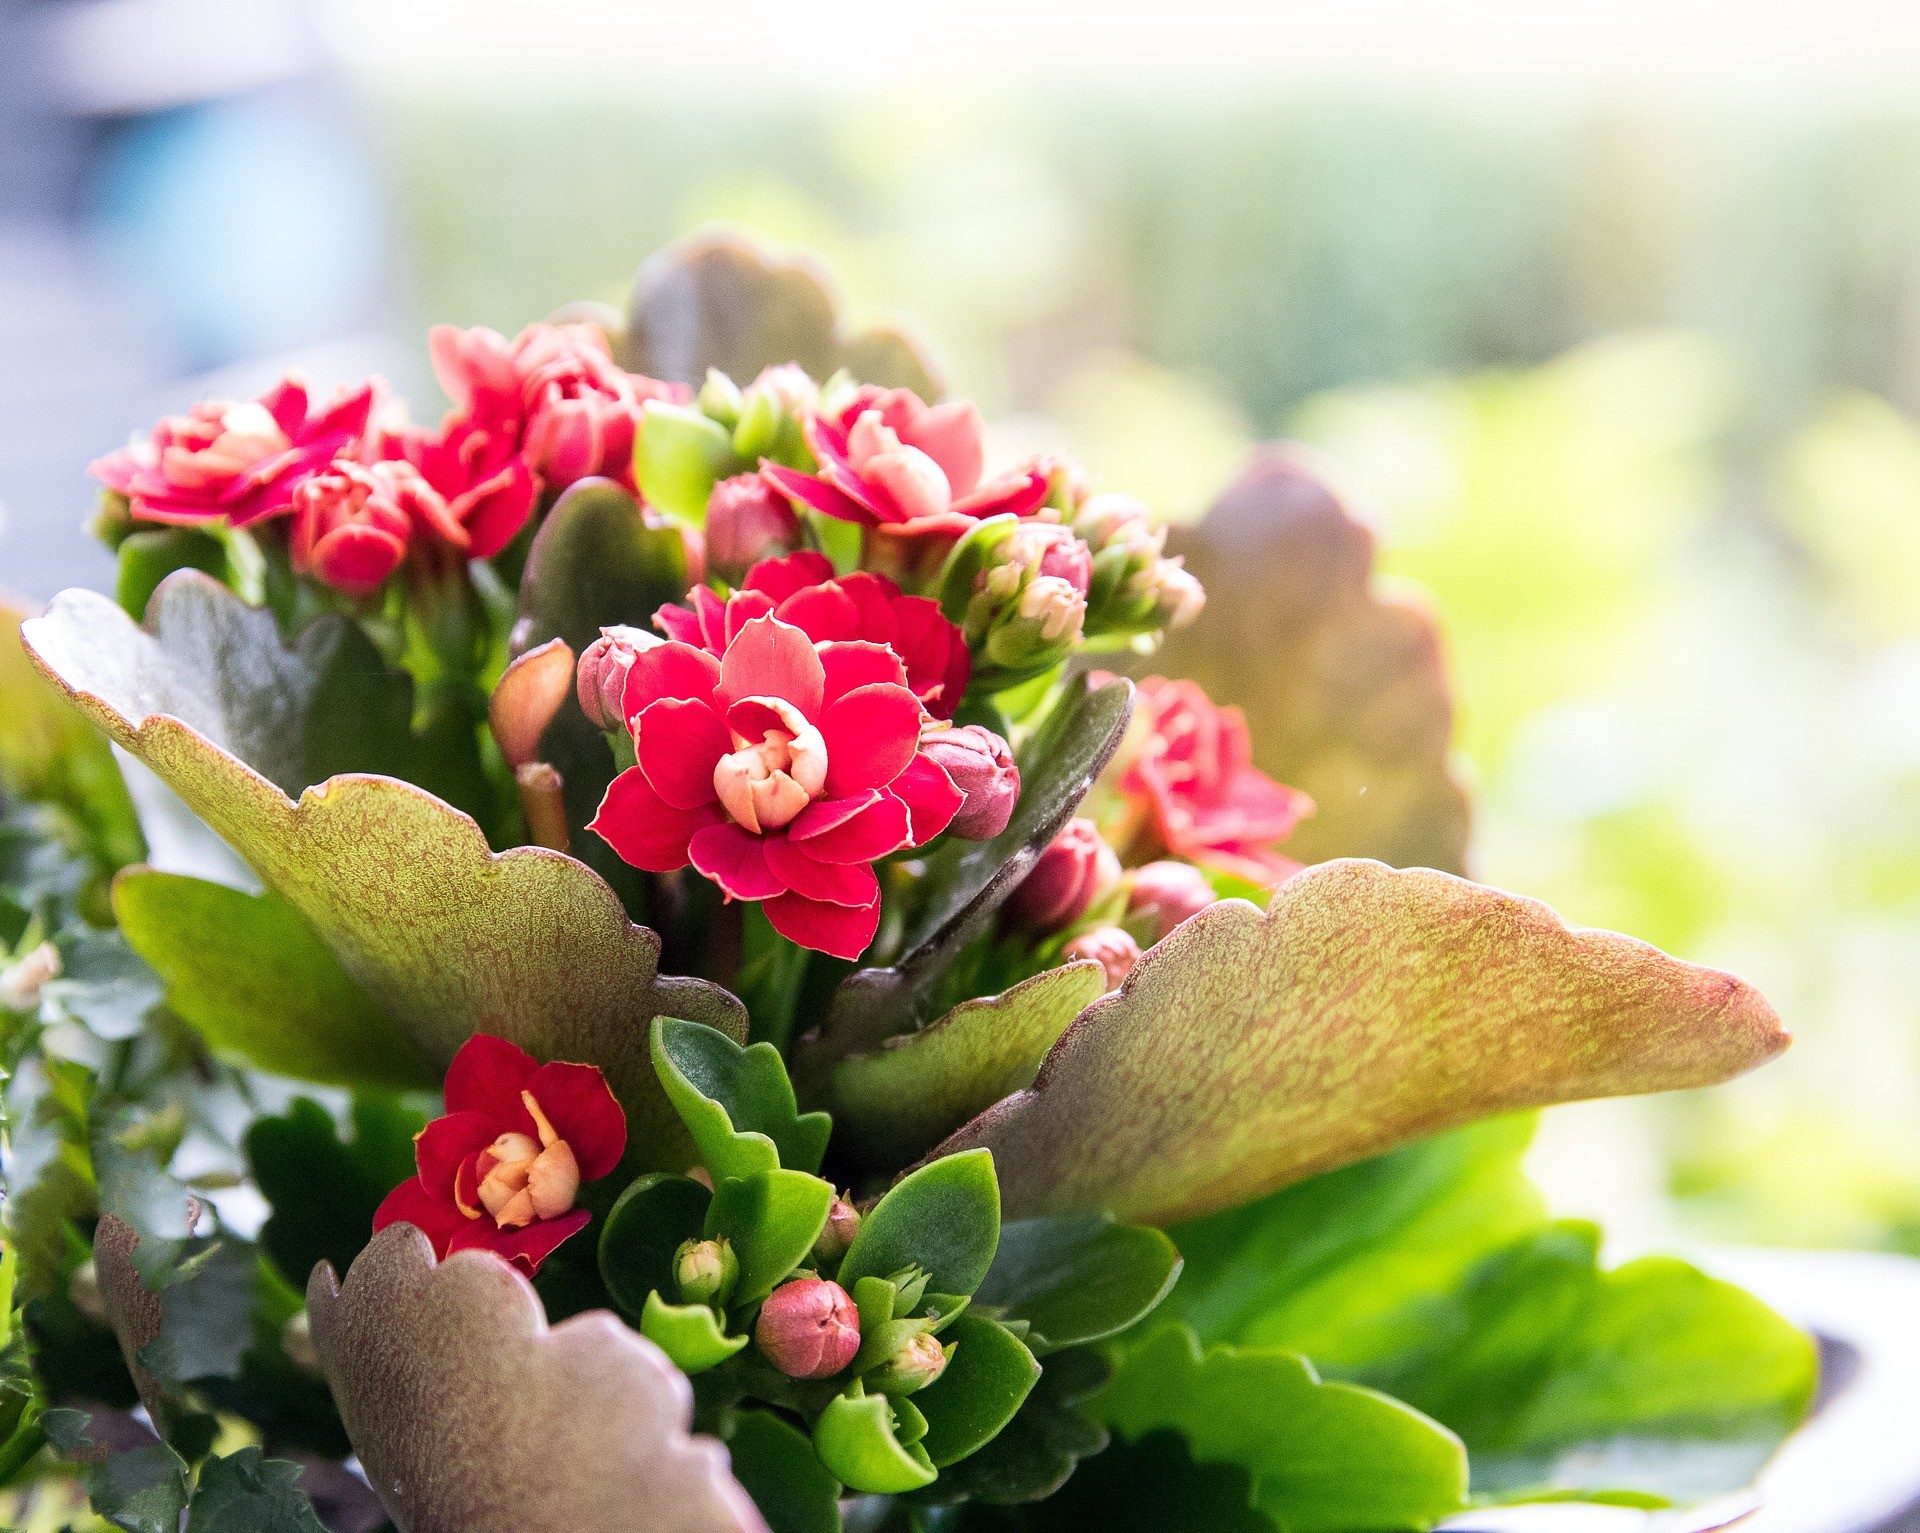 As flores da Kalanchoe podem ser encontradas em tom alaranjado, vermelho, amarelo, rosa, lilás e branco (Foto: Pixabay / Creative Commons)